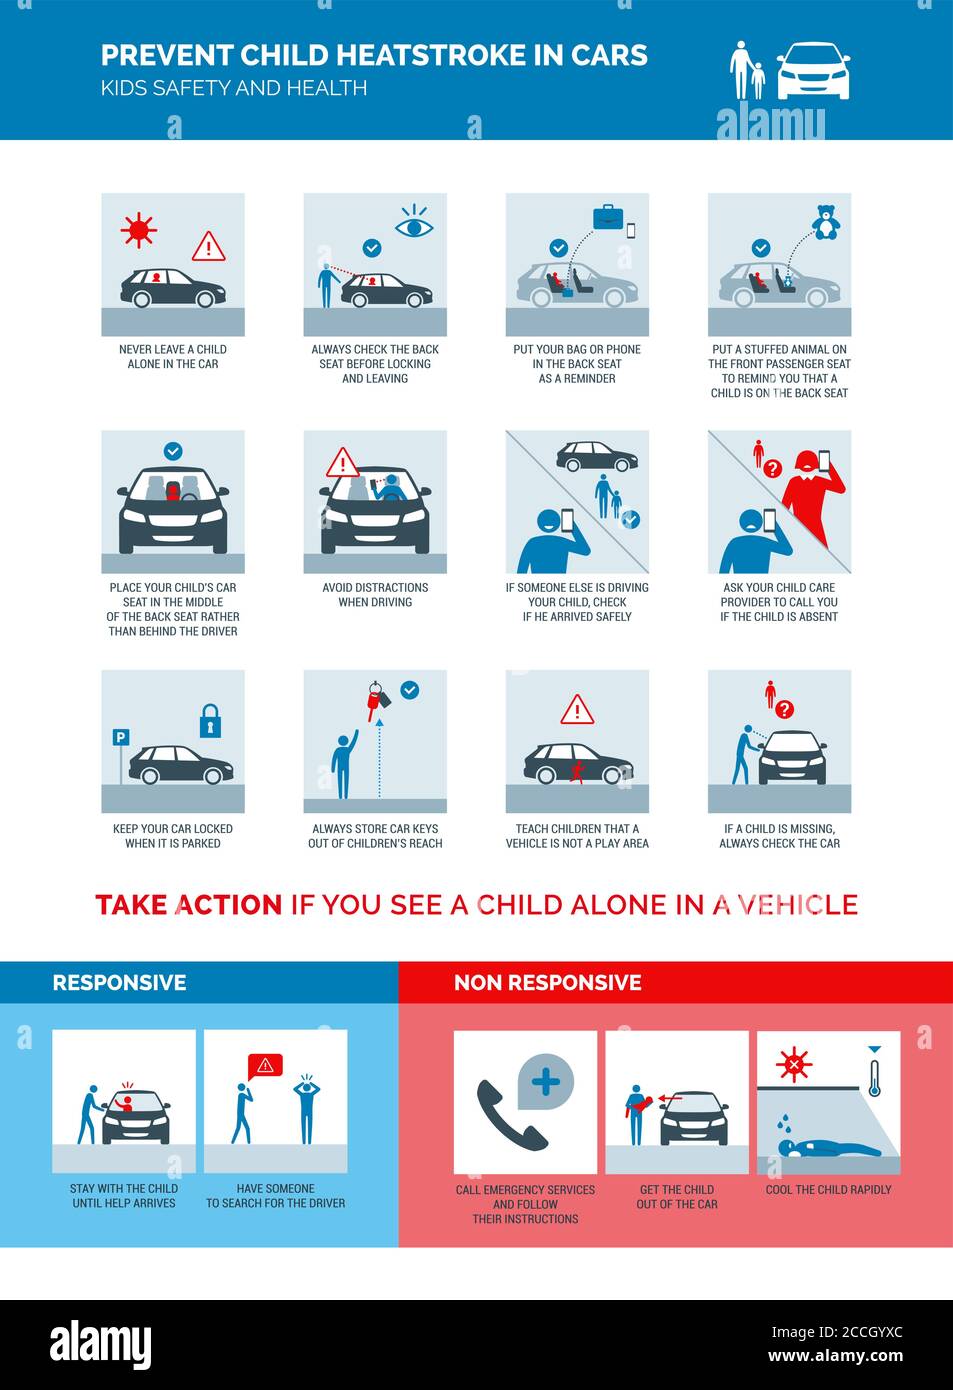 Infographie sur la prévention des coups de chaleur chez les enfants dans les voitures, conseils de sécurité et premiers soins pour les enfants laissés seuls dans une voiture Illustration de Vecteur